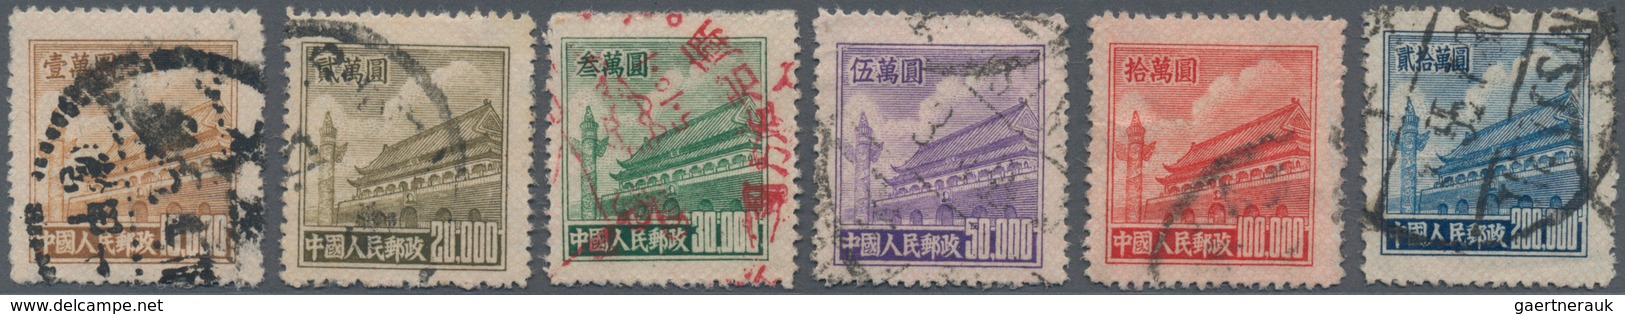 China - Volksrepublik: 1951, Tiananmen Definitives R5, Used, $50000 With 2mm Tear Upper Left Corner, - Briefe U. Dokumente